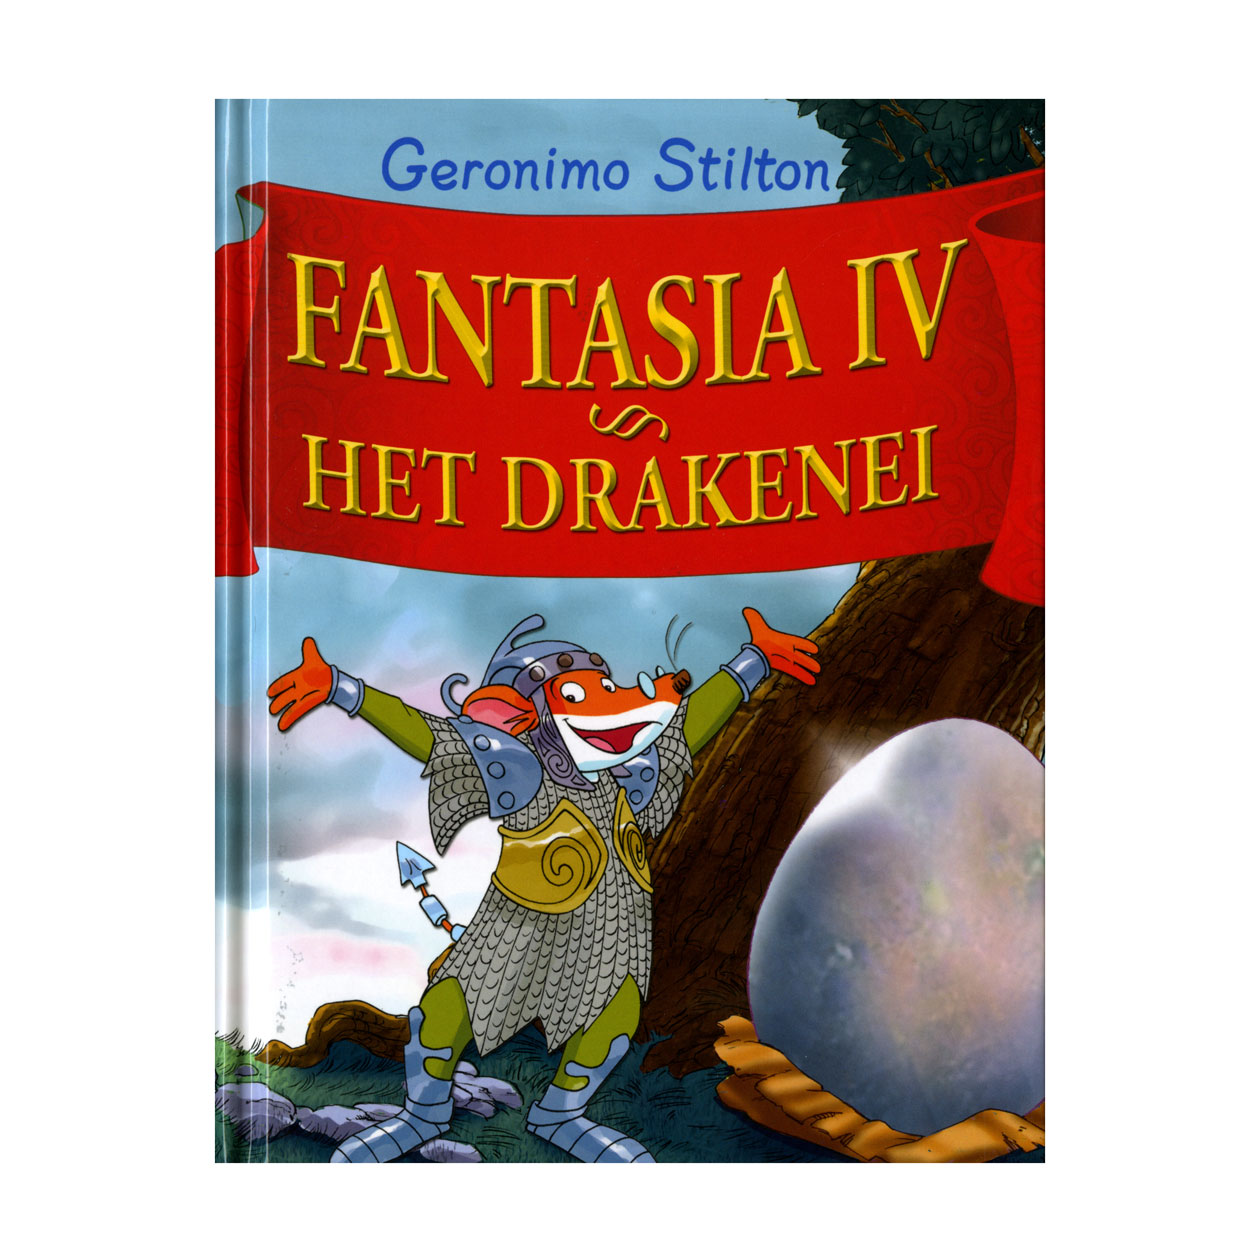 Fantasia IV - Het drakenei